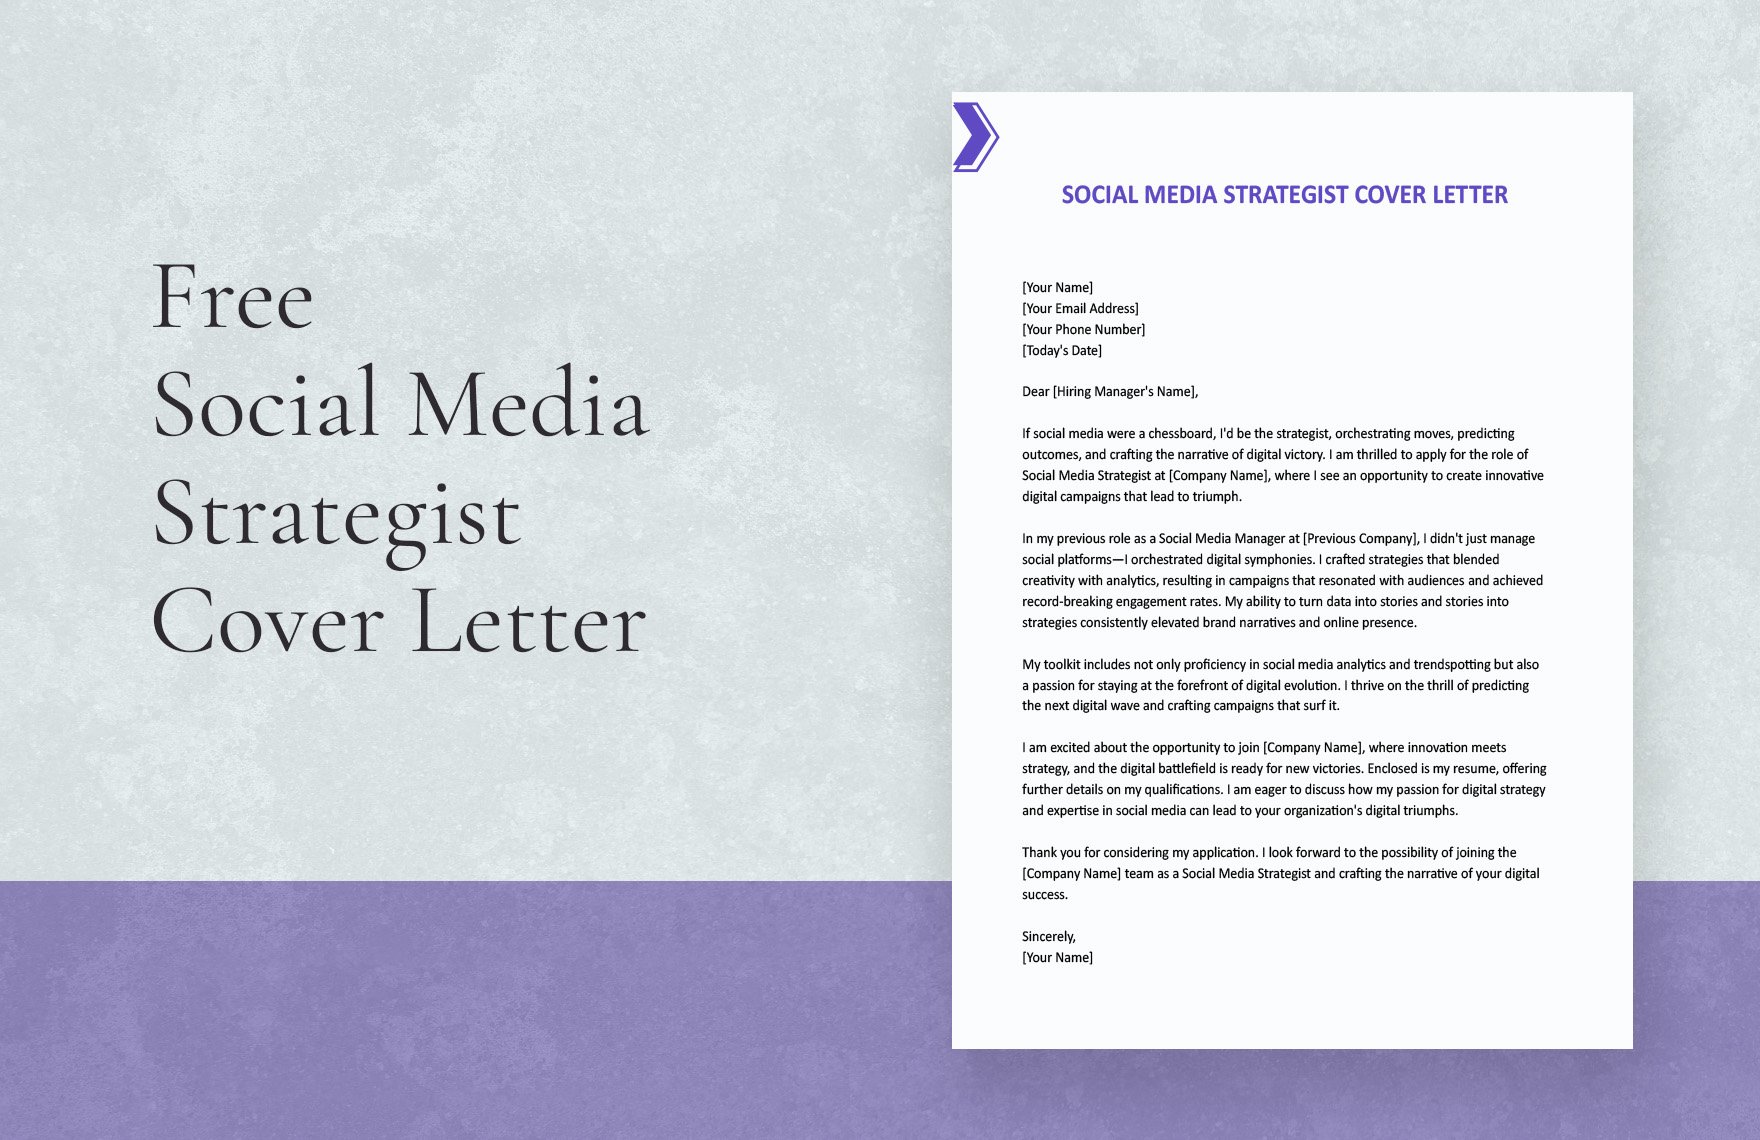 Social Media Strategist Cover Letter in Word, Google Docs